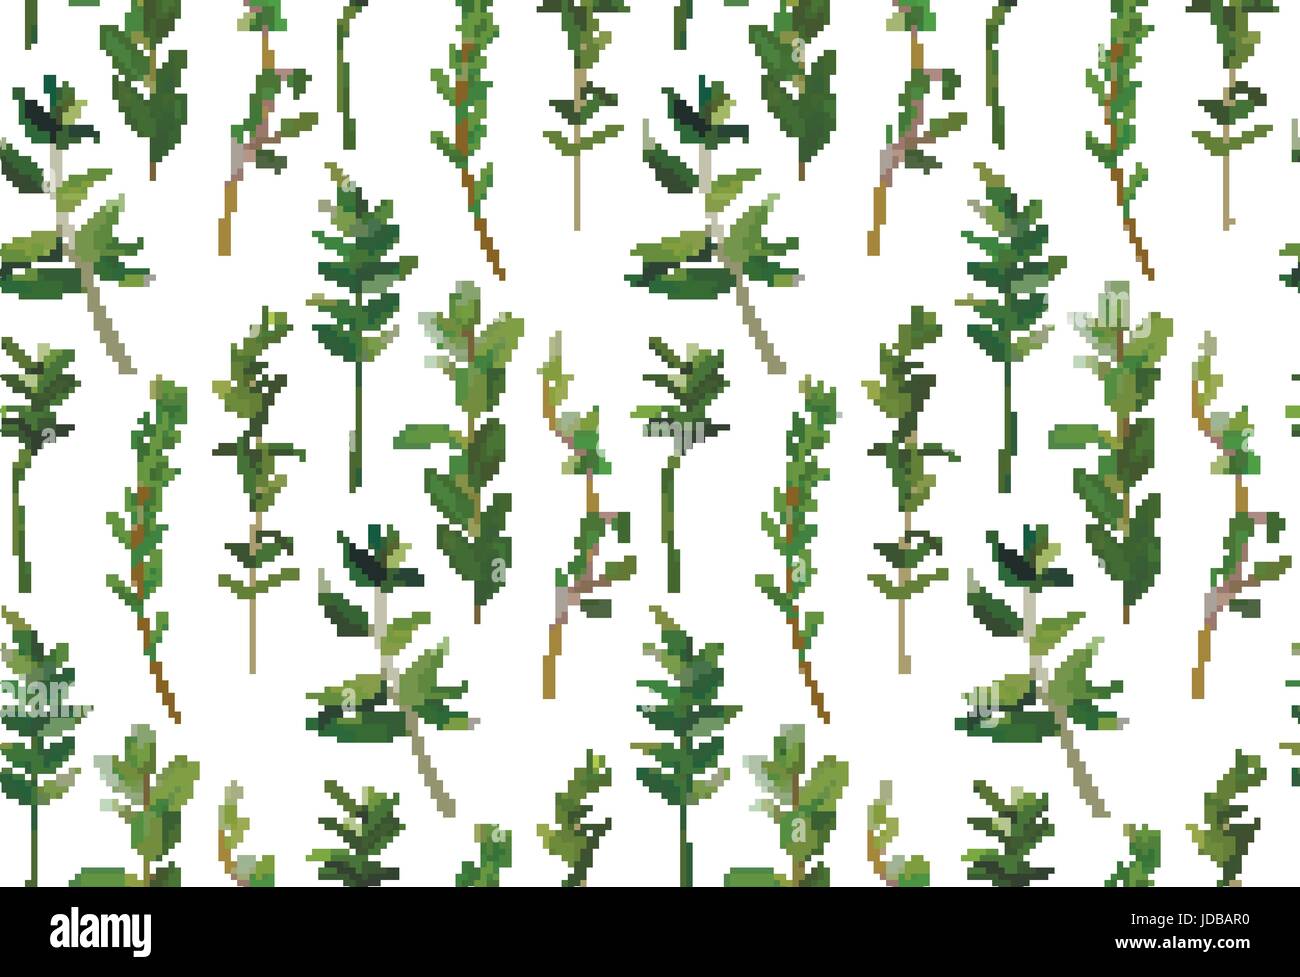 Eukalyptus und grün verschiedene Baum Laub natürliche Äste, grüne Blätter tropischen Musterdesign im Aquarell-Stil. Dekorative Beauti Vektor Stock Vektor